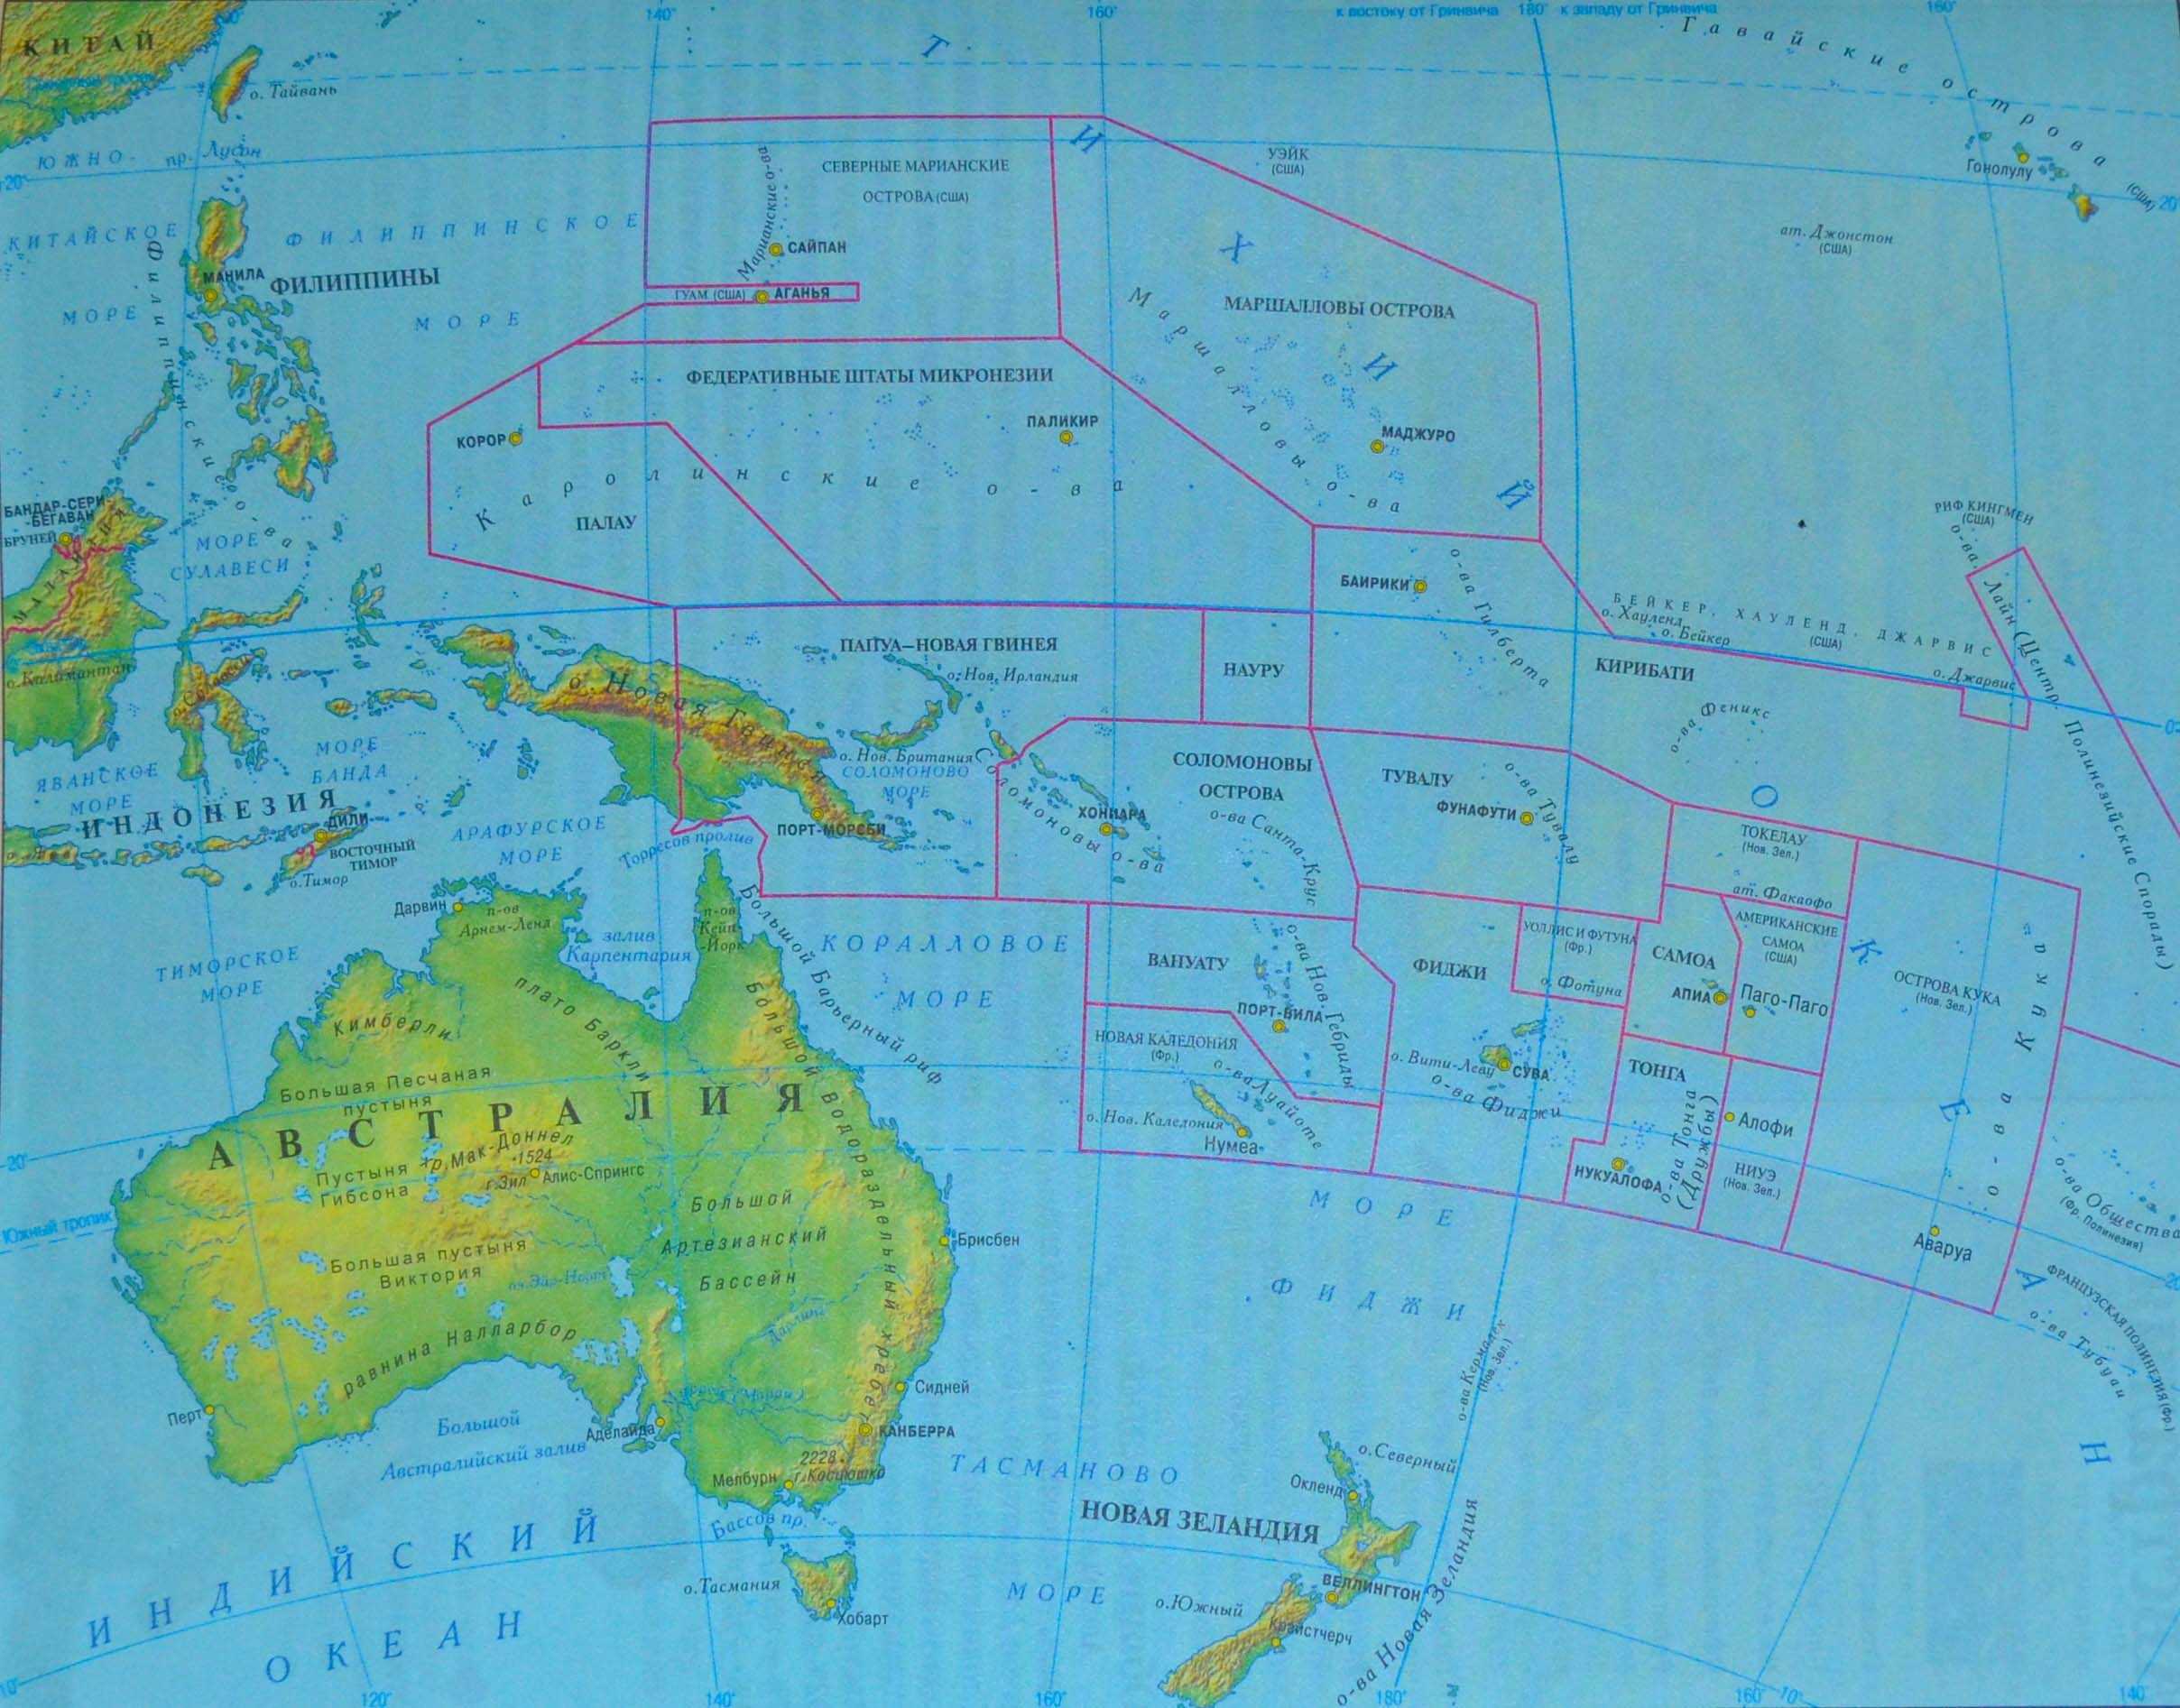 Австралия и океания территория. Политическая карта Океании со странами. Карта Австралия и Океания политическая карта. Физ карта Австралии и Океании. Политическая карта Австралии и Океании на русском.